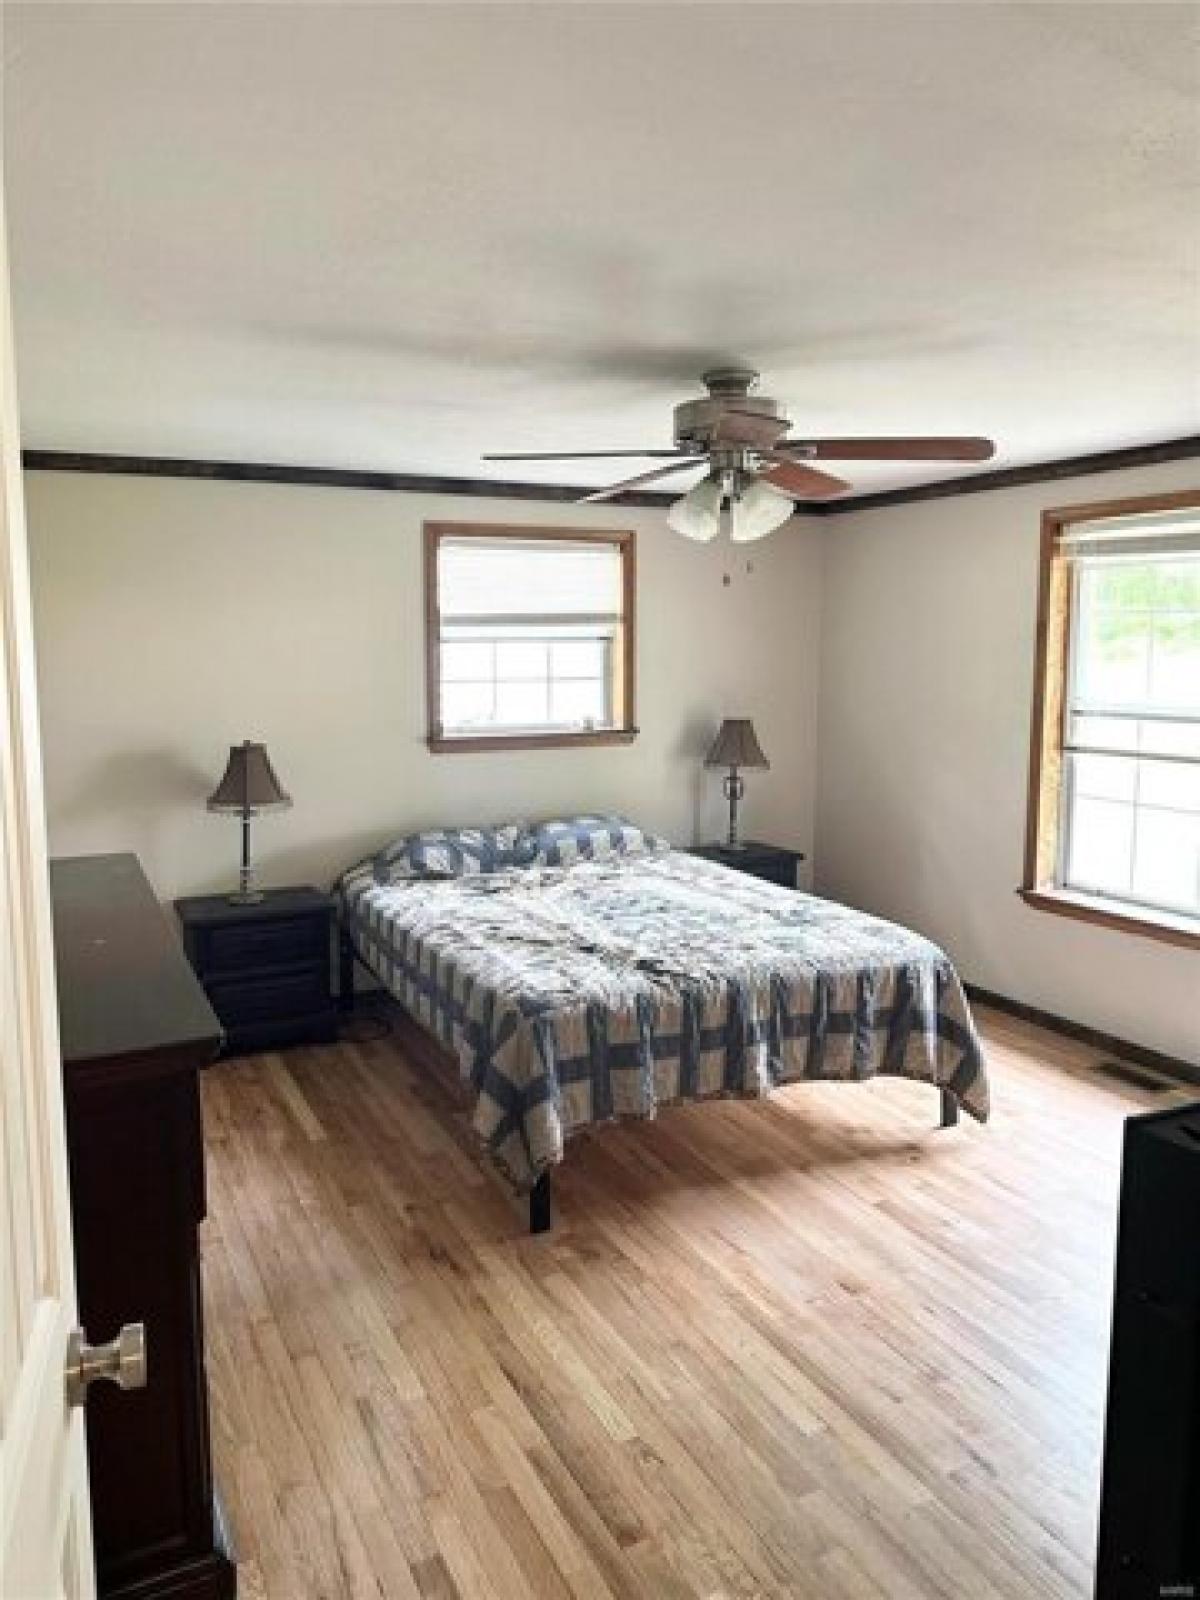 Picture of Home For Sale in Villa Ridge, Missouri, United States